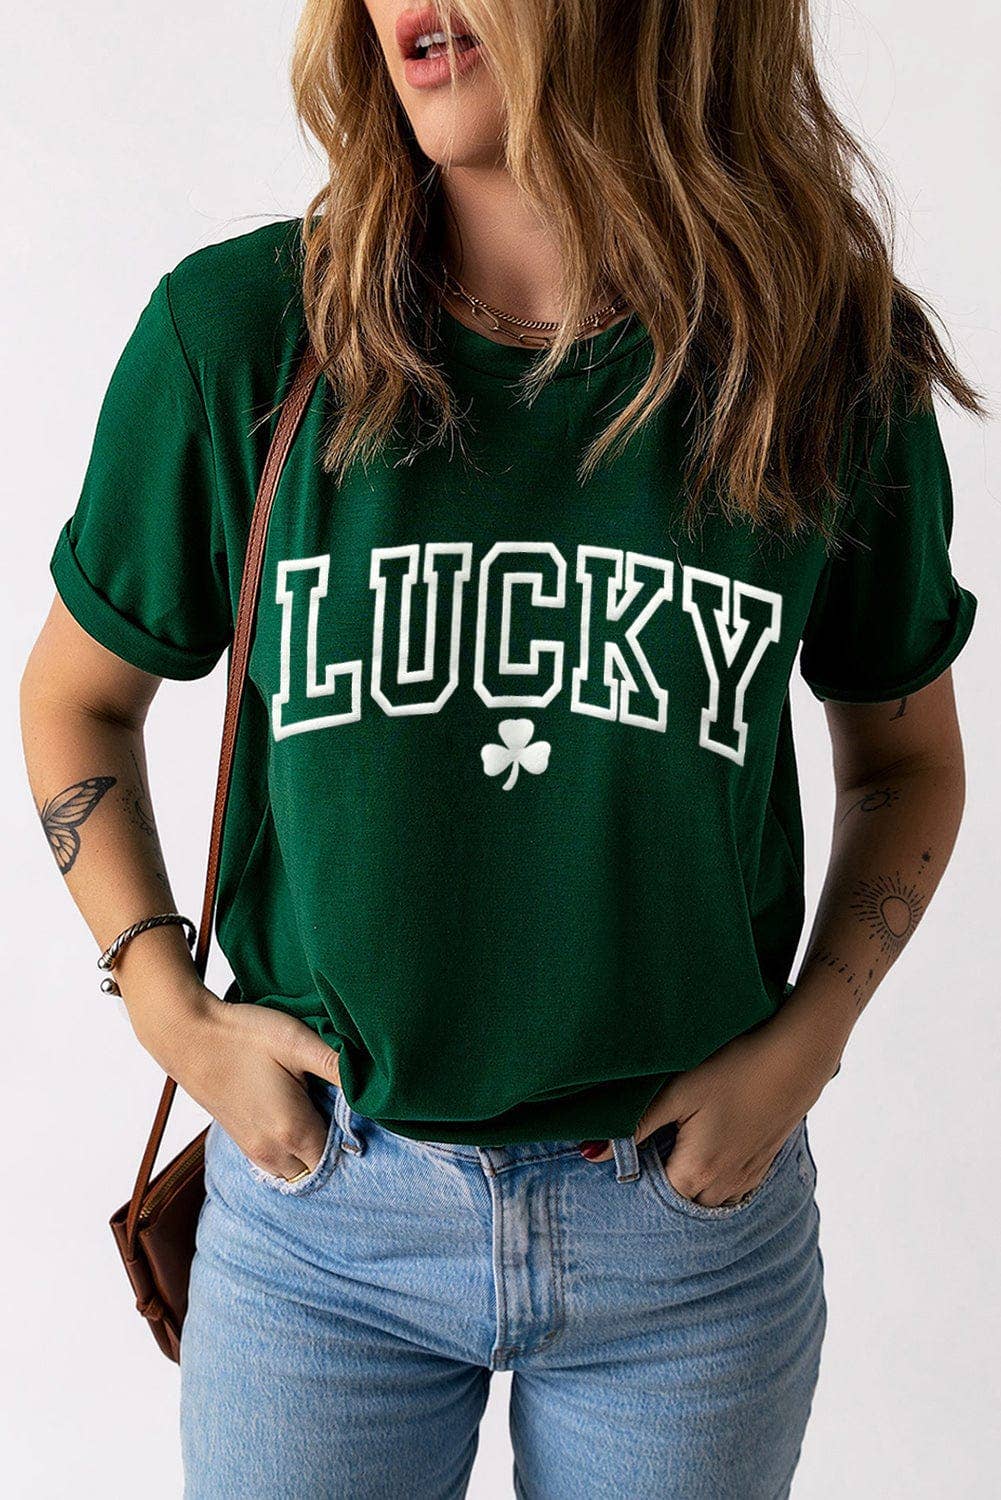 LUCKY Clover Round Neck T Shirt: M / Green